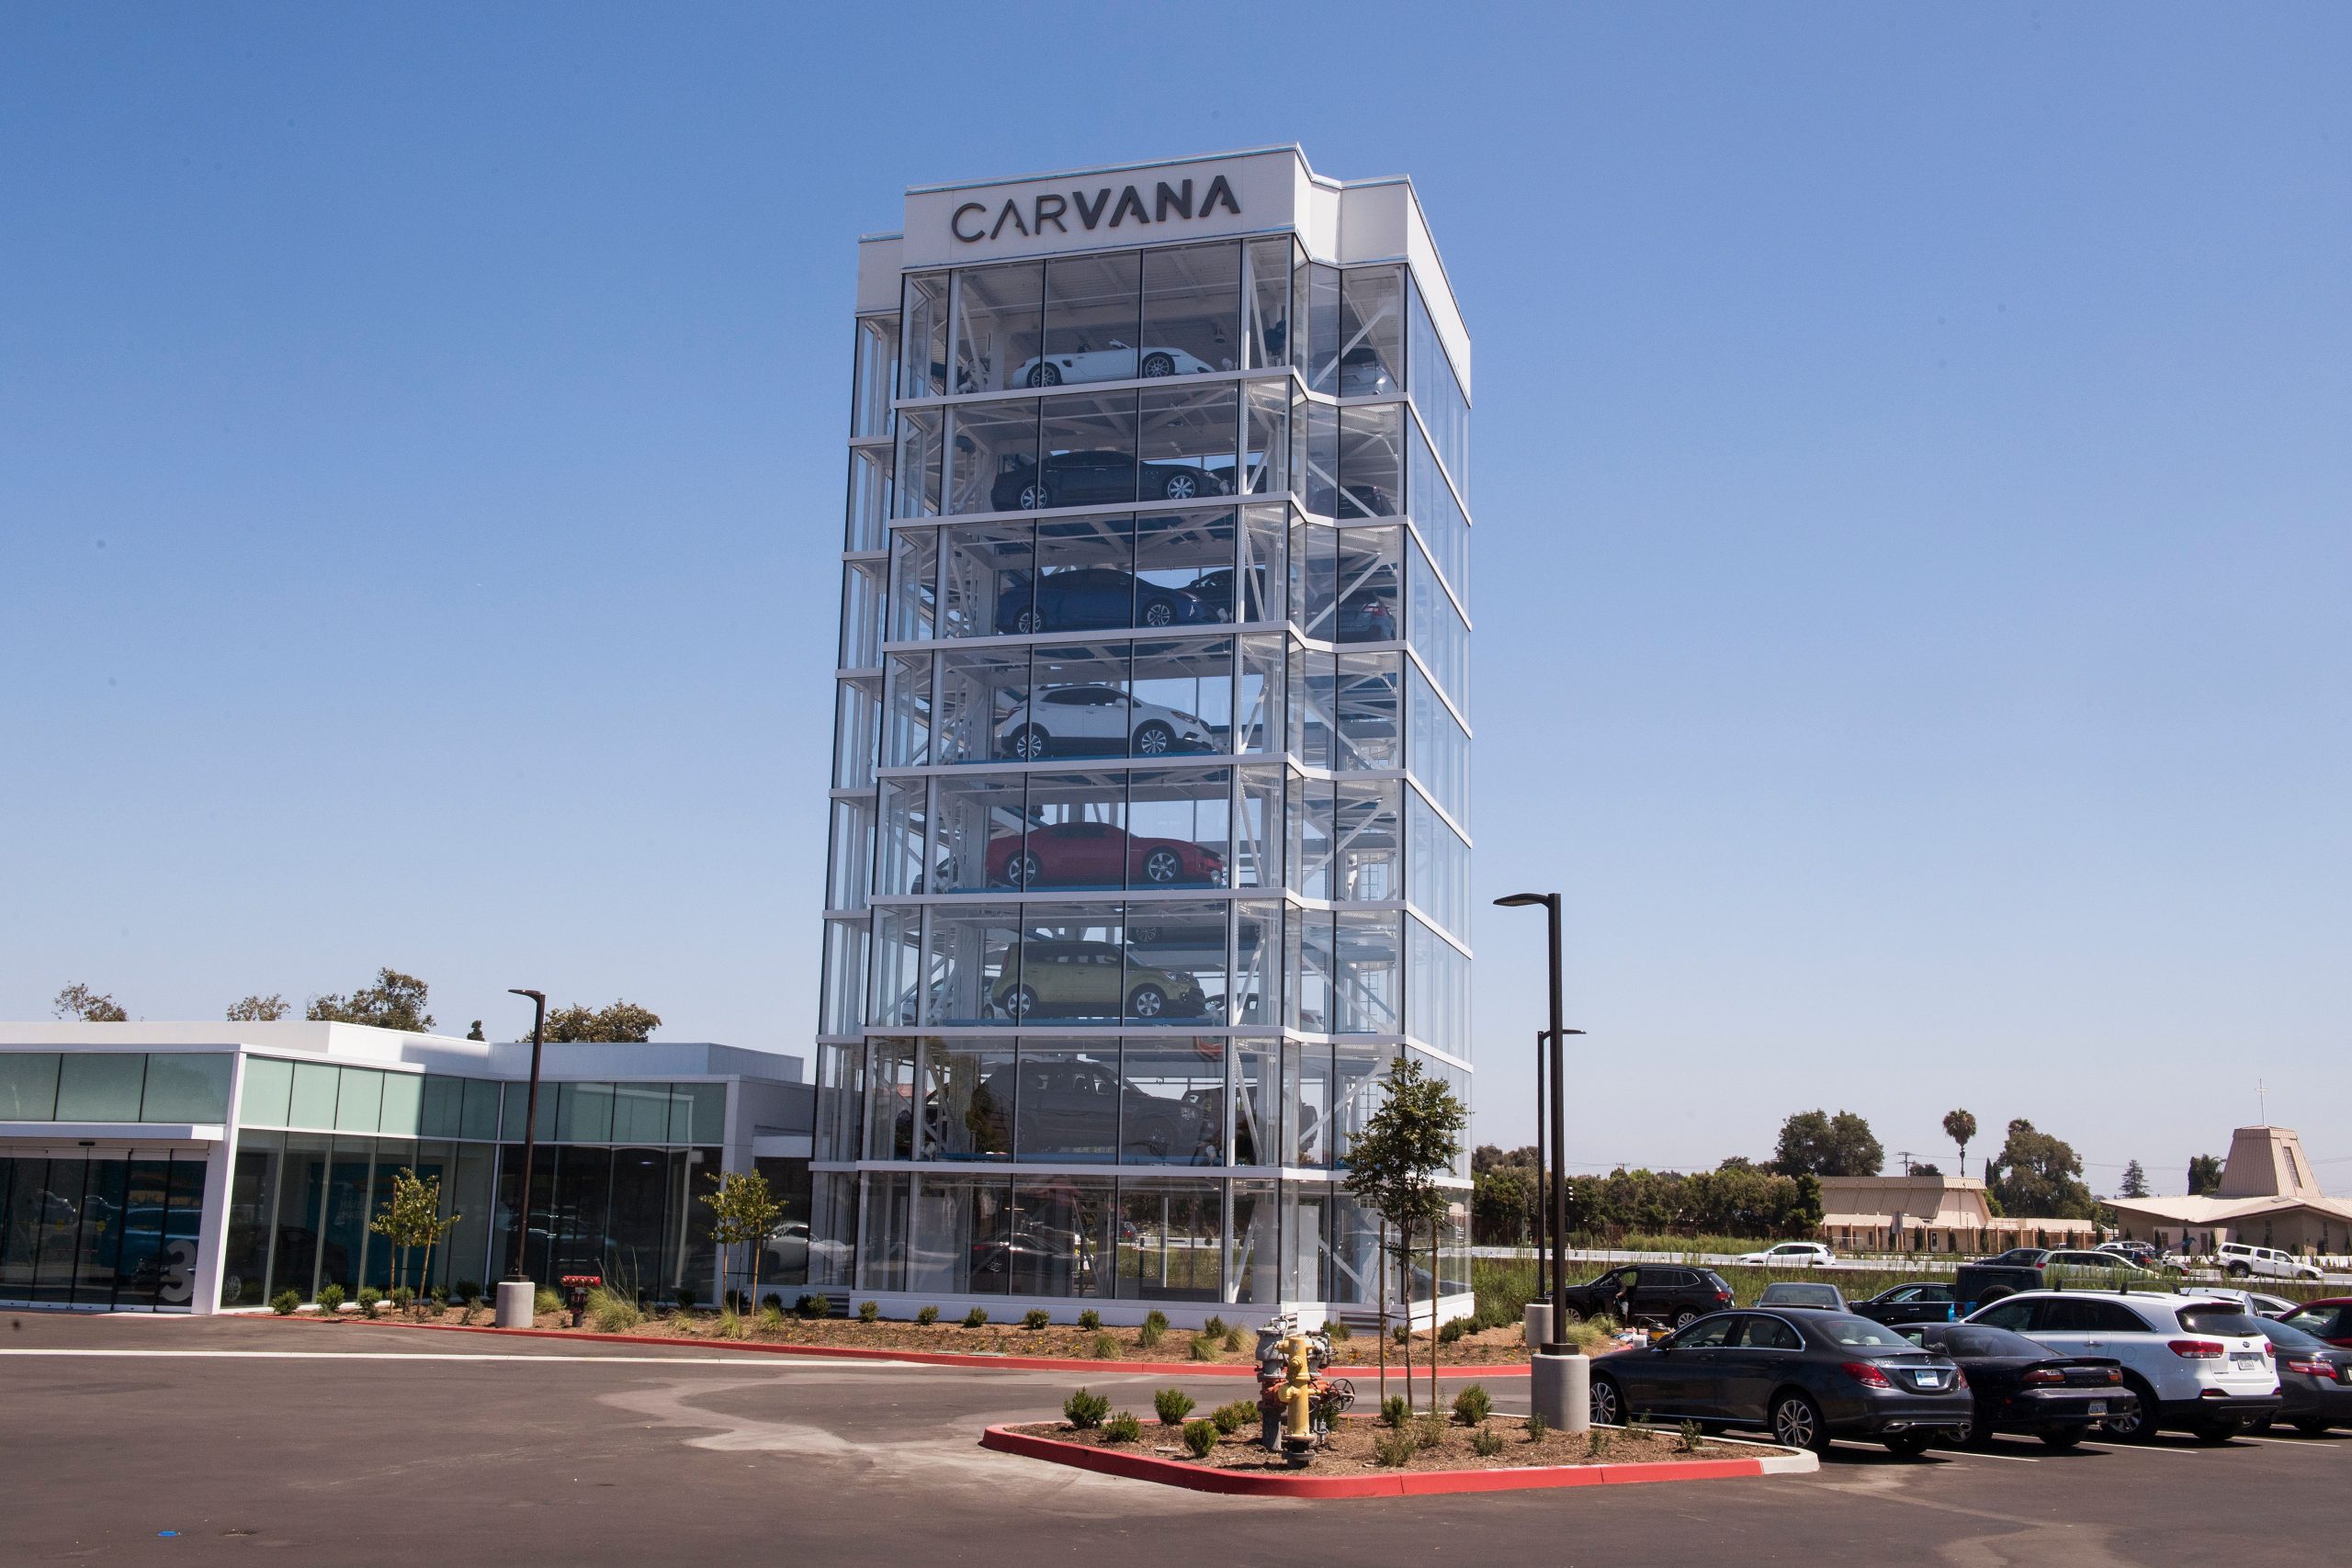 Carvana's vending machine complex in California